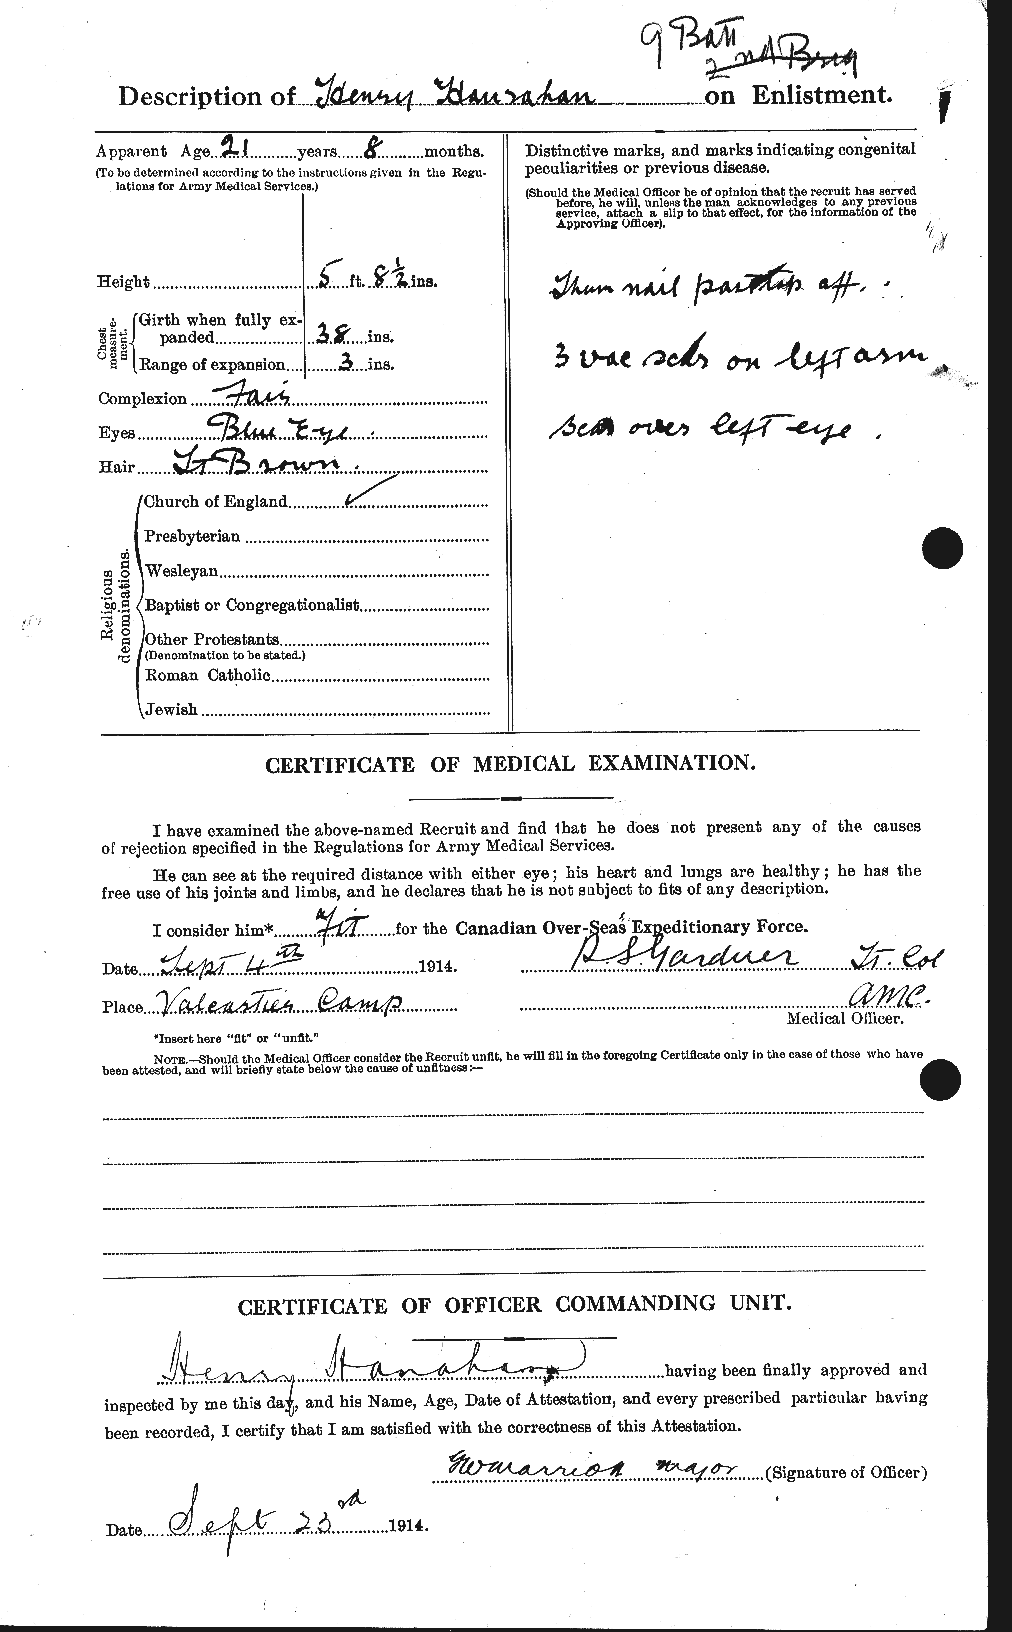 Dossiers du Personnel de la Première Guerre mondiale - CEC 378551b